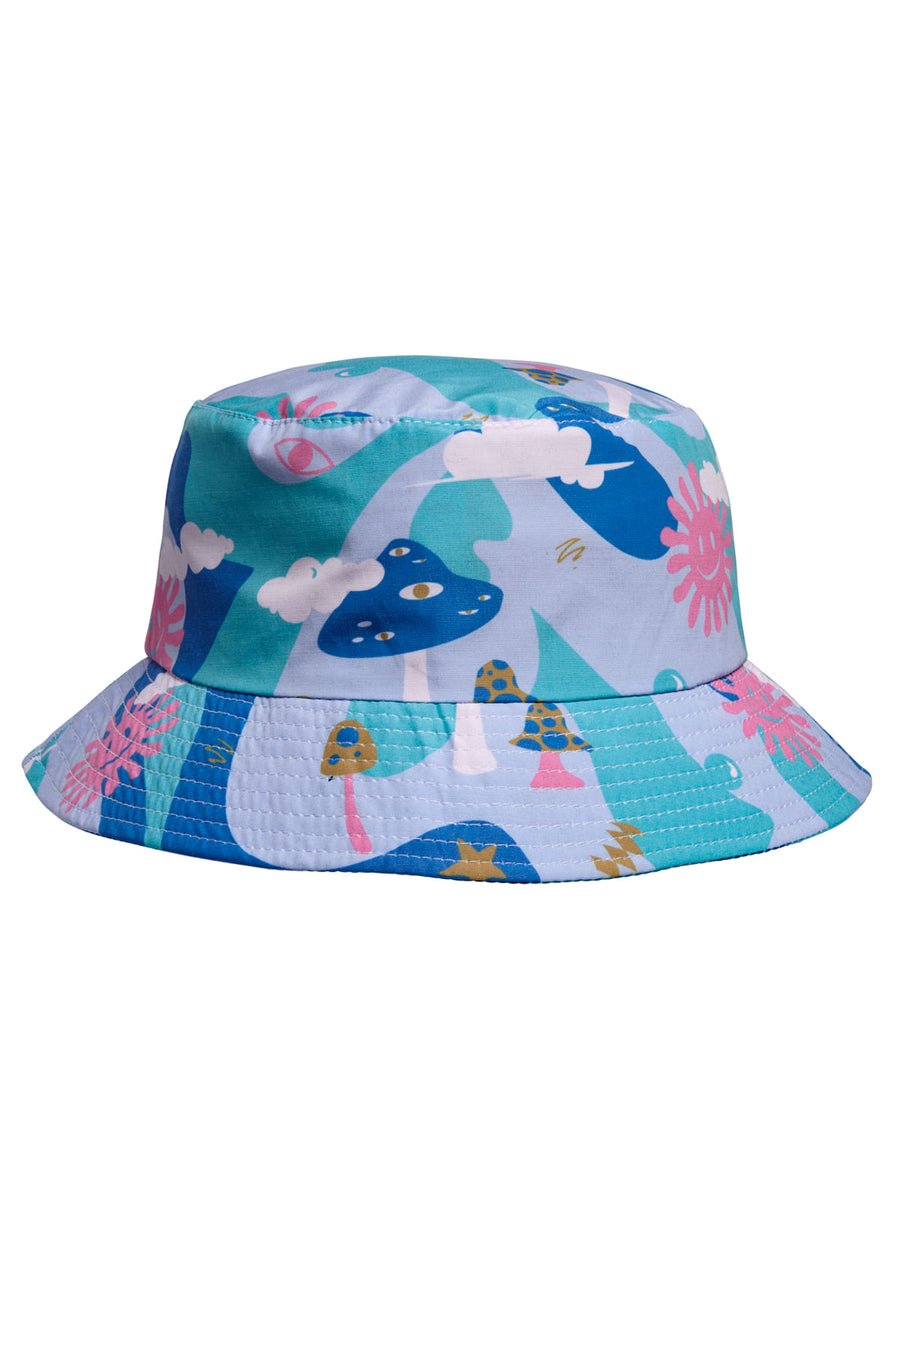 Sunshine / Space / Bucket Hat